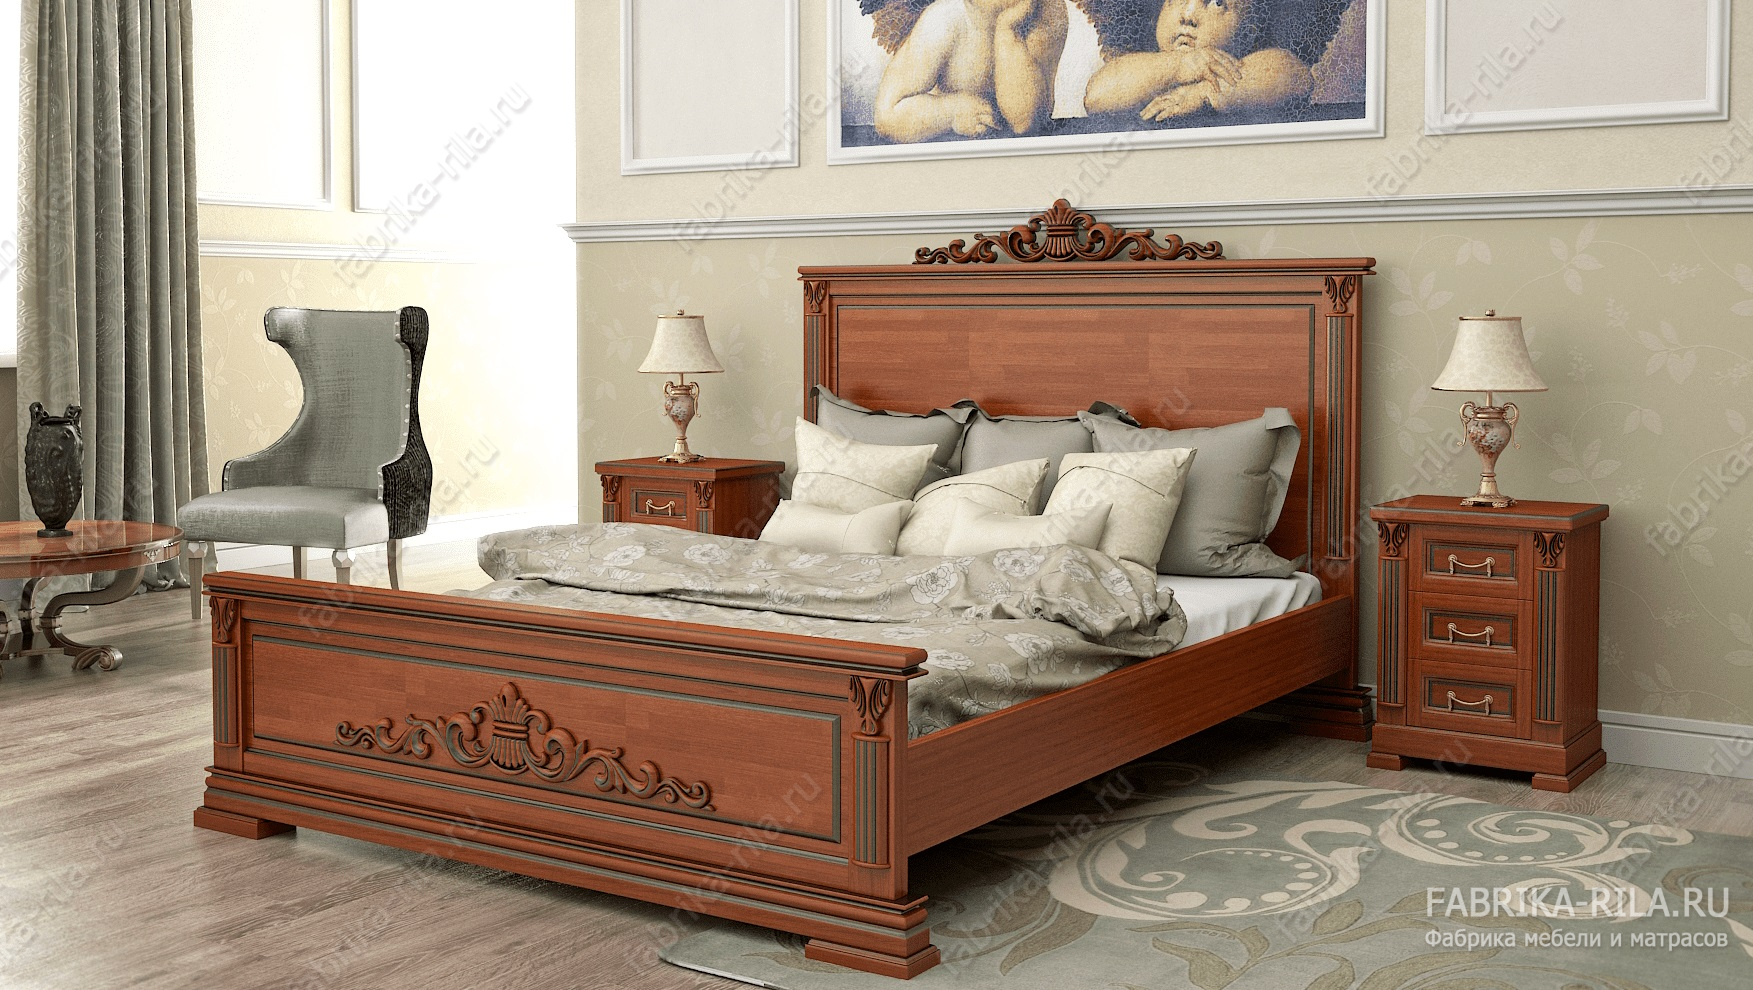 Кровать Viktori 1 — 200x200 см. из сосны